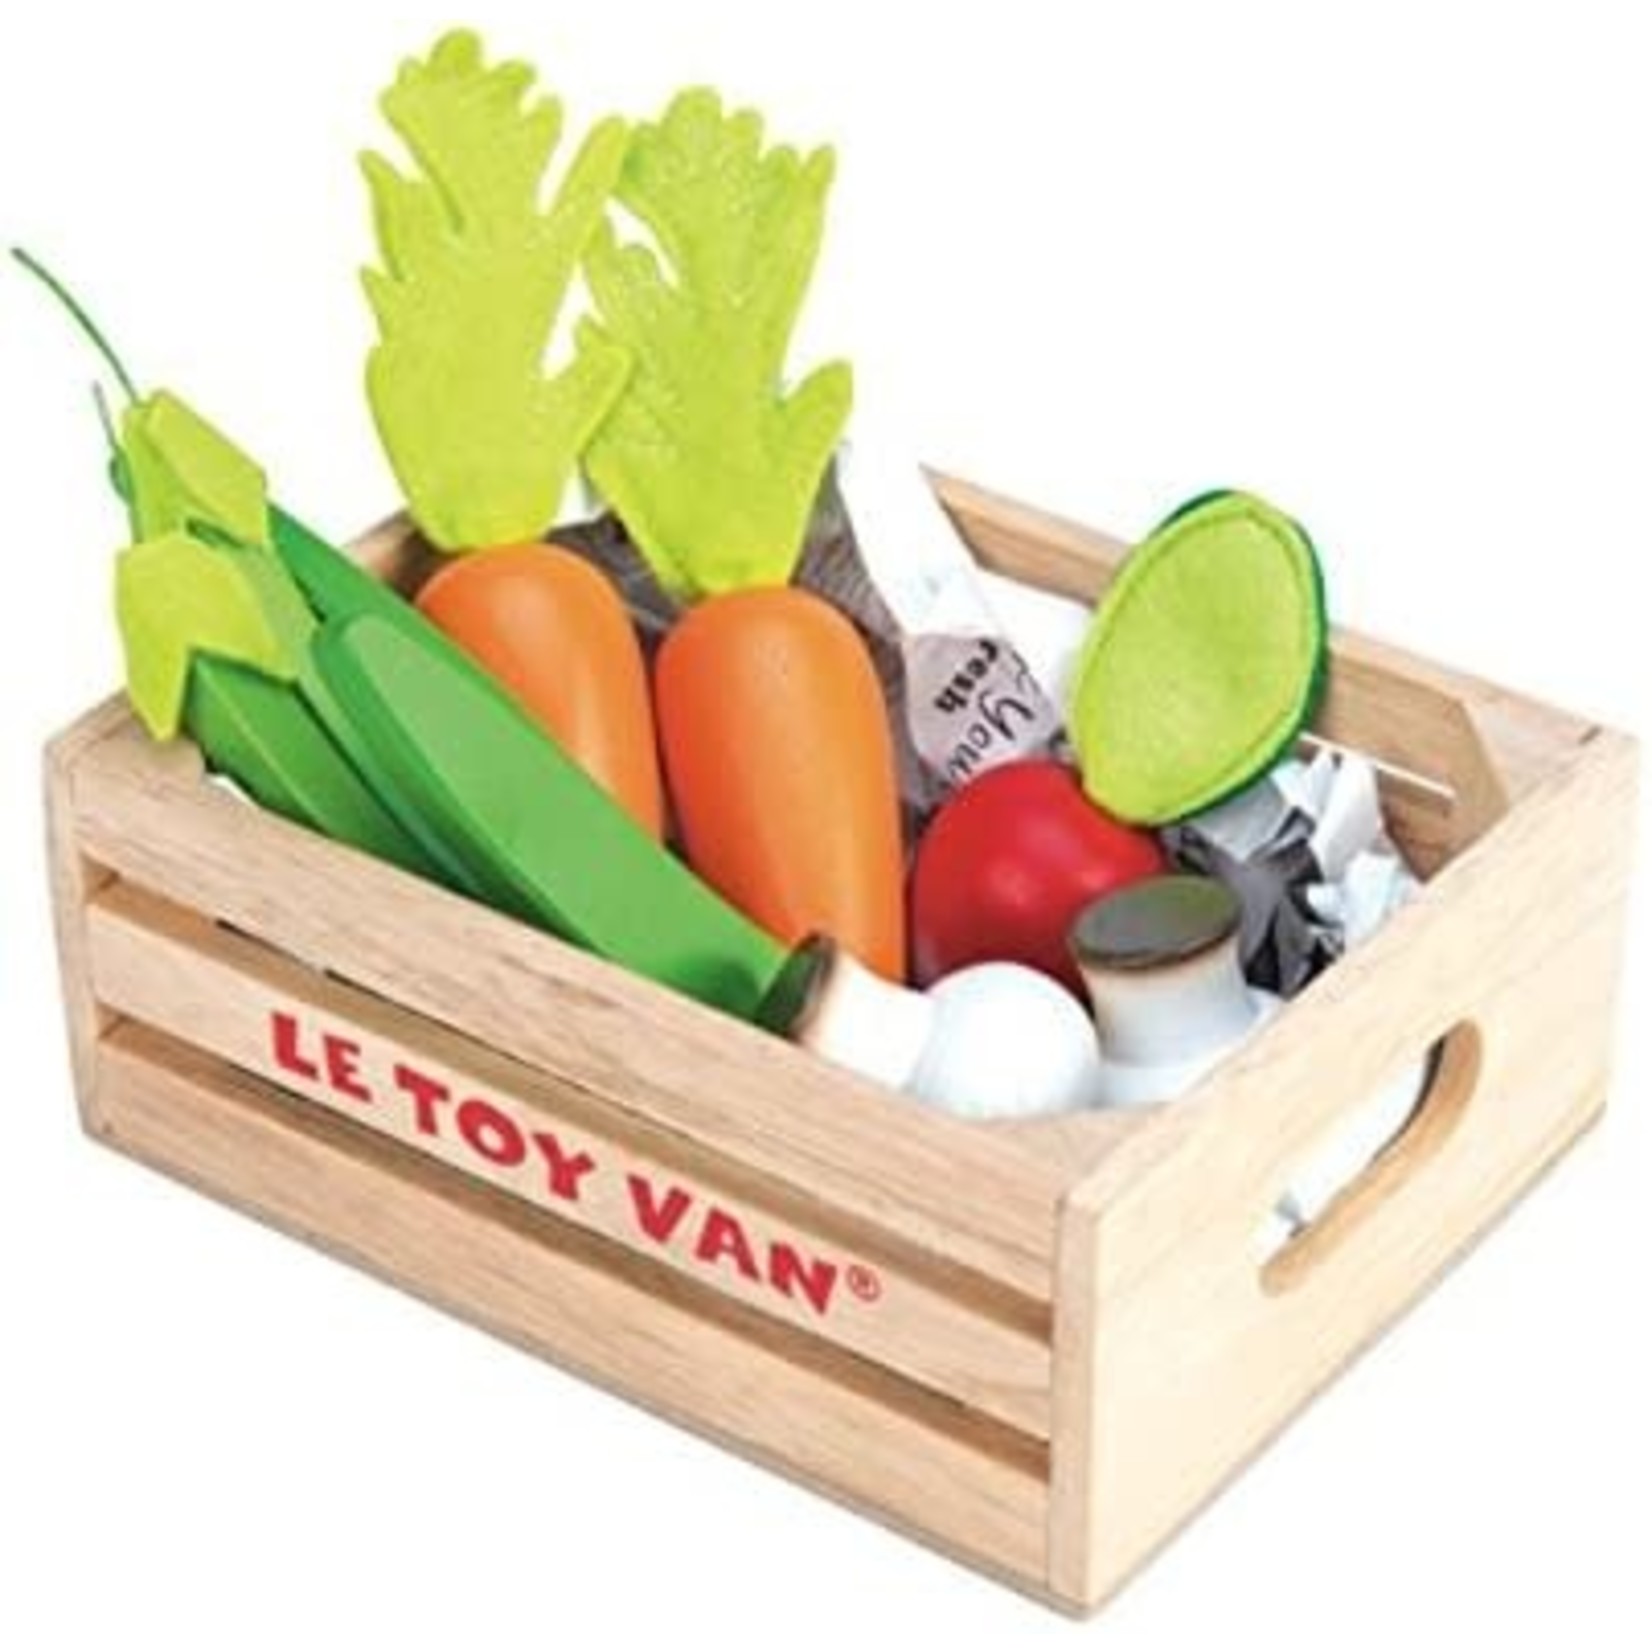 Le Toy Van veggie market crate